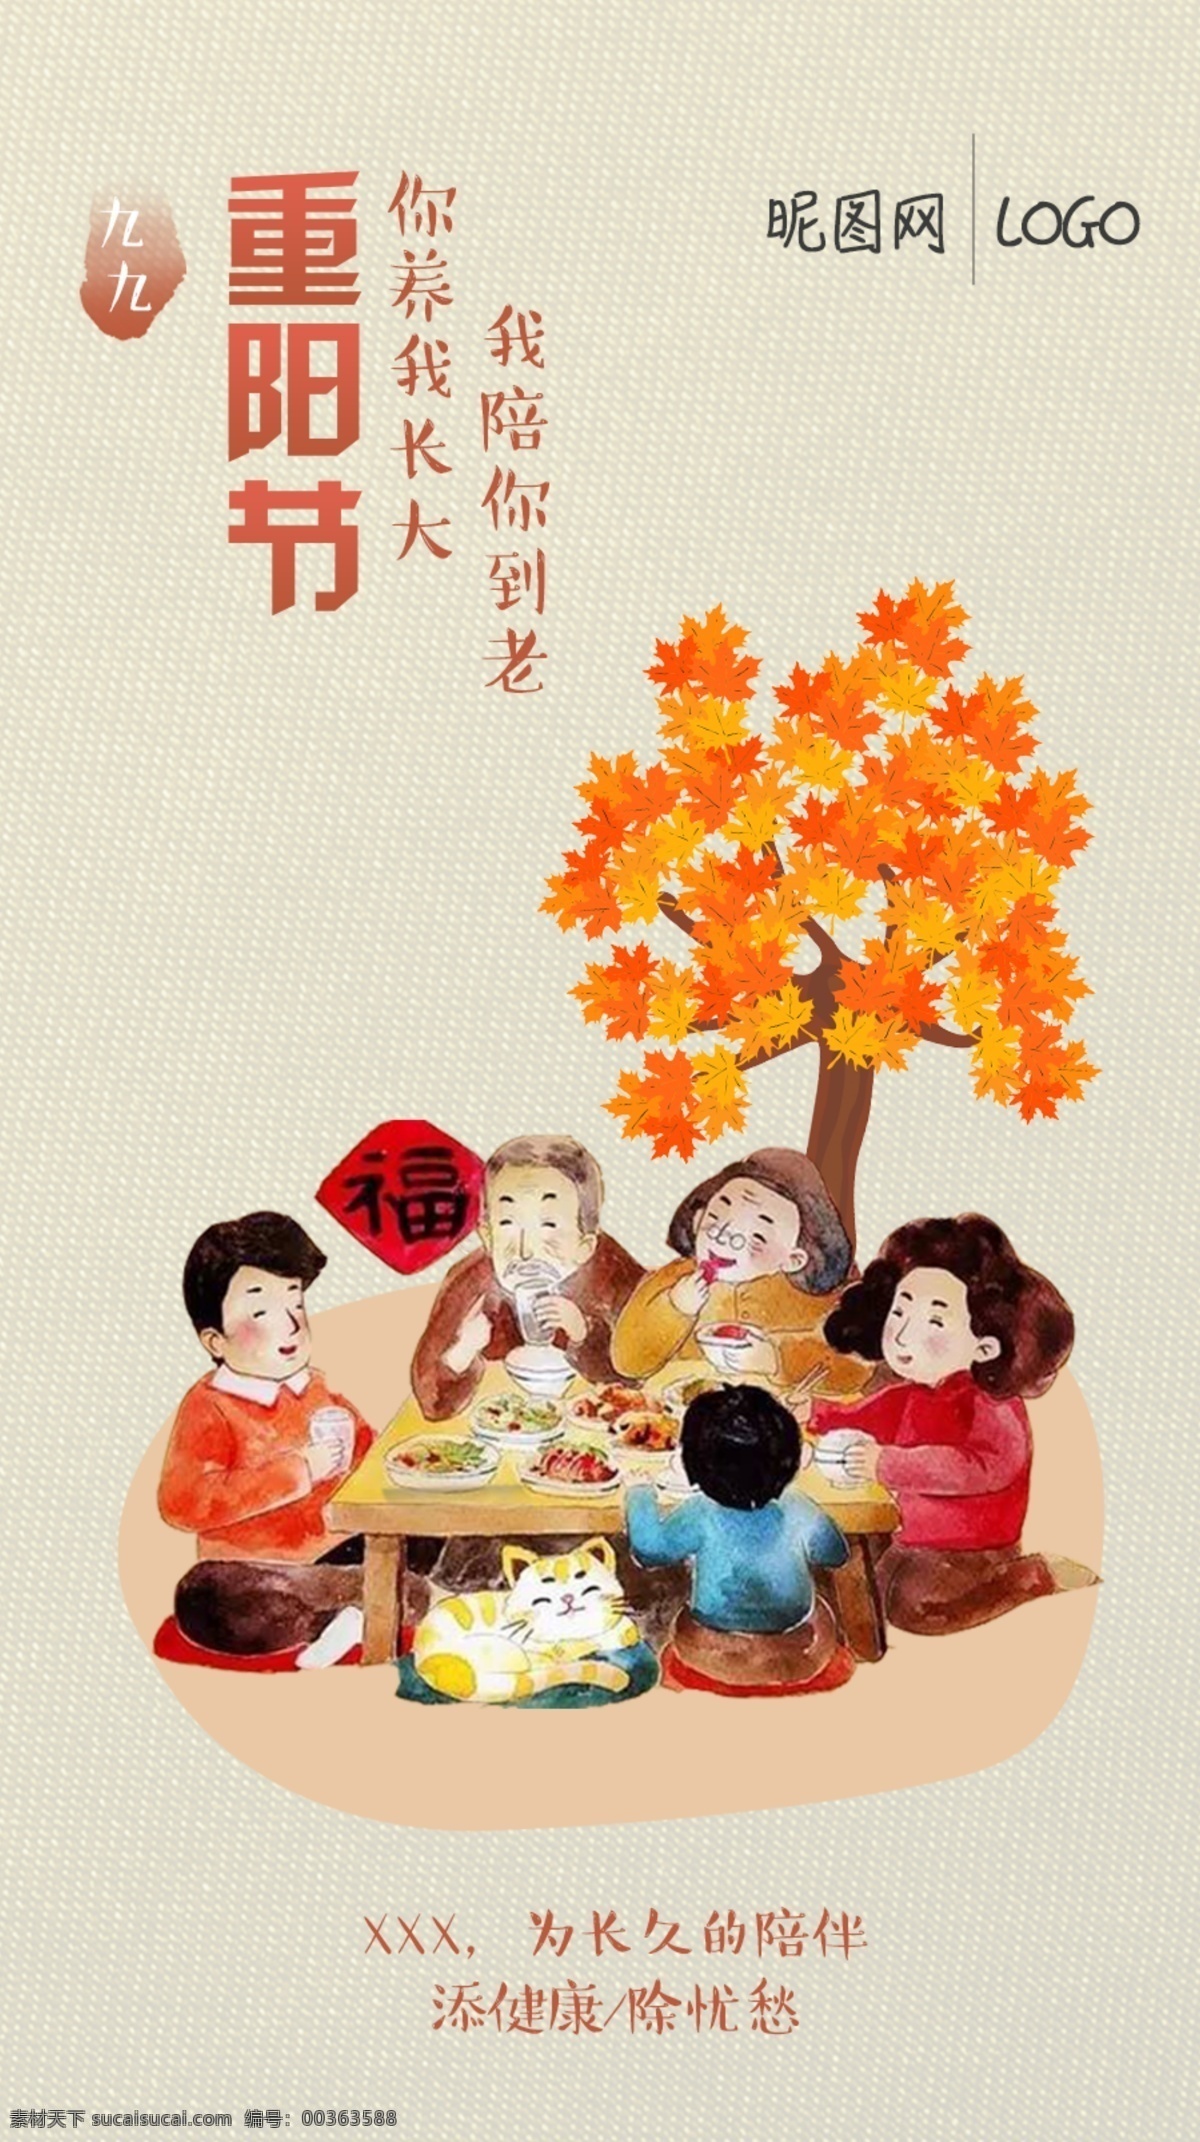 重阳节海报 重阳节 敬老 团圆 饭桌 陪伴 一家人 重阳节设计 重阳节广告